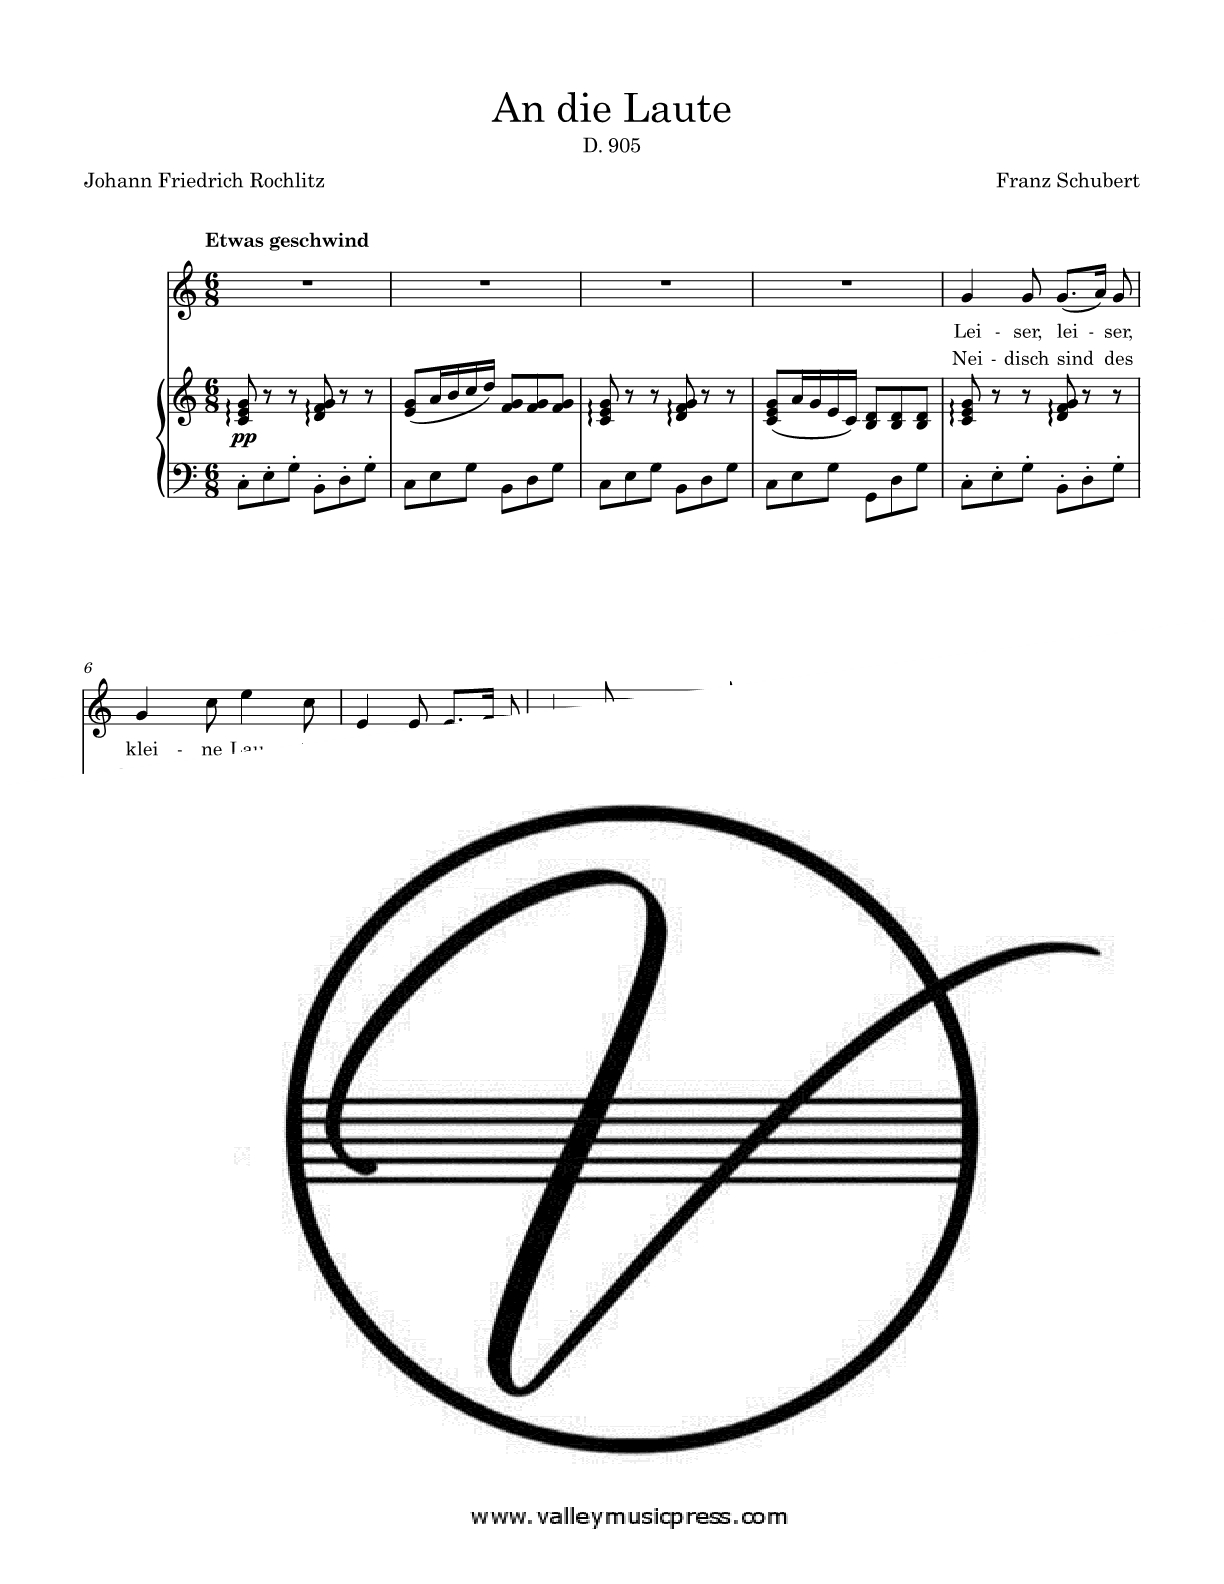 Schubert - An die Laute Op. 88 No. 2 D. 905 (Voice)